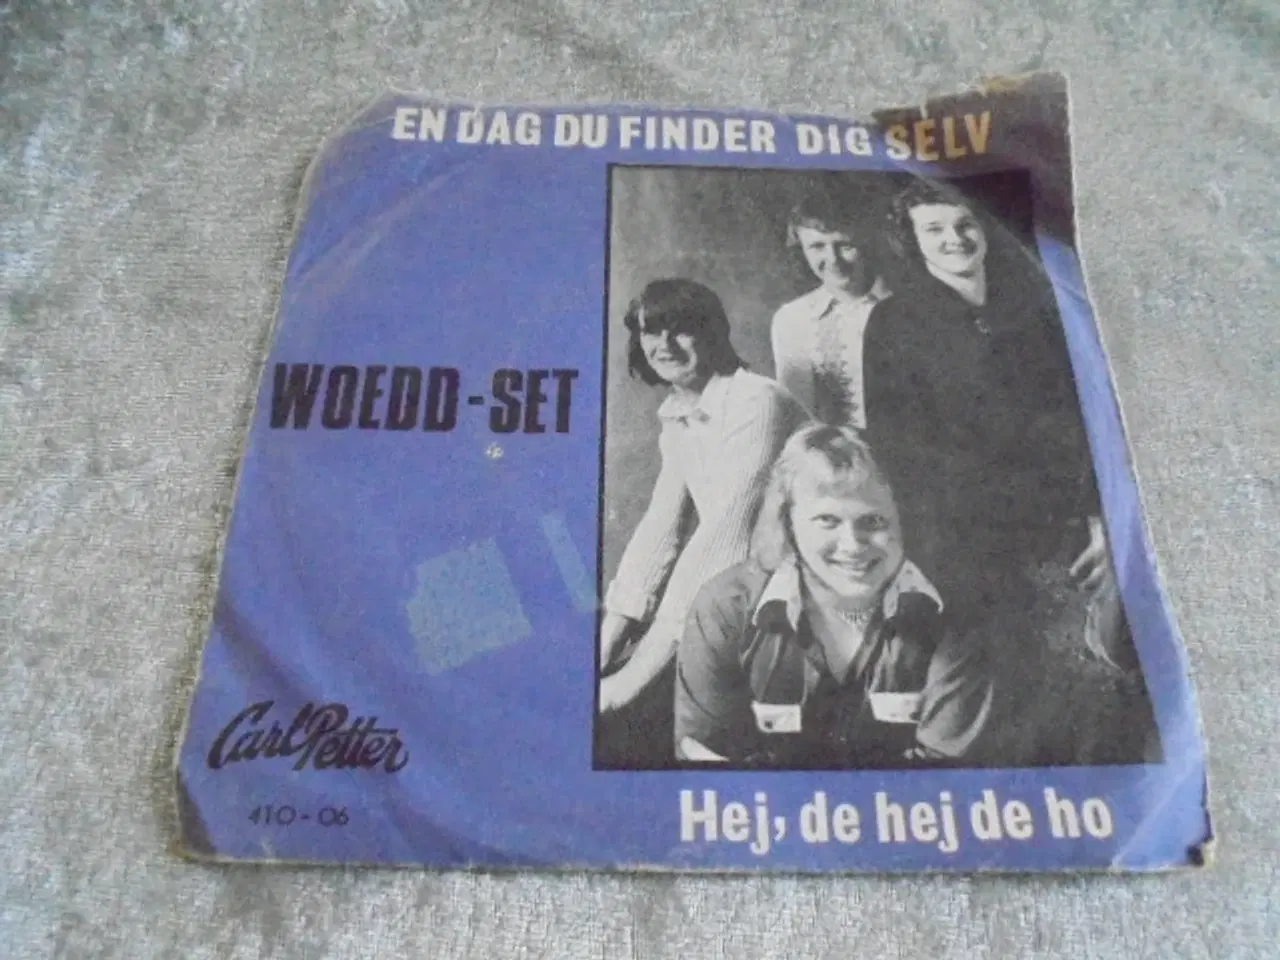 Billede 1 - Single: The Woedd-Set fra CarlPetter  